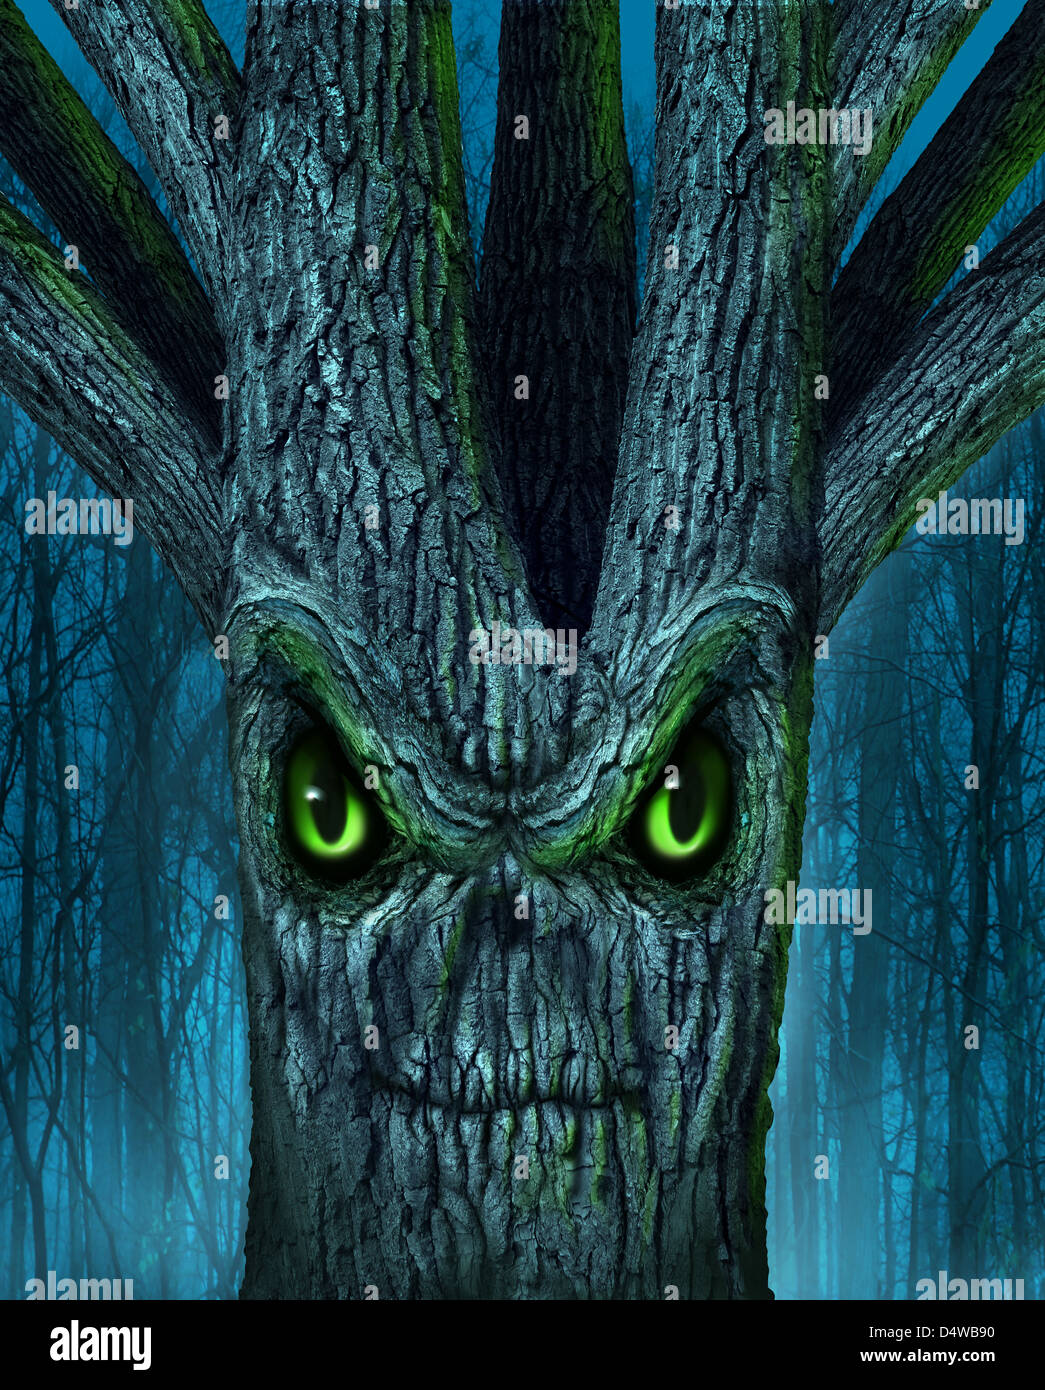 Verwunschene Baum mit einem mythischen dunklen Wald und eine böse Pflanze geformt wie ein Dämon Geist Totenkopf als Halloween oder Ghost Verwandte Konzept der Monster und imaginären Kreaturen aus der Folklore. Stockfoto